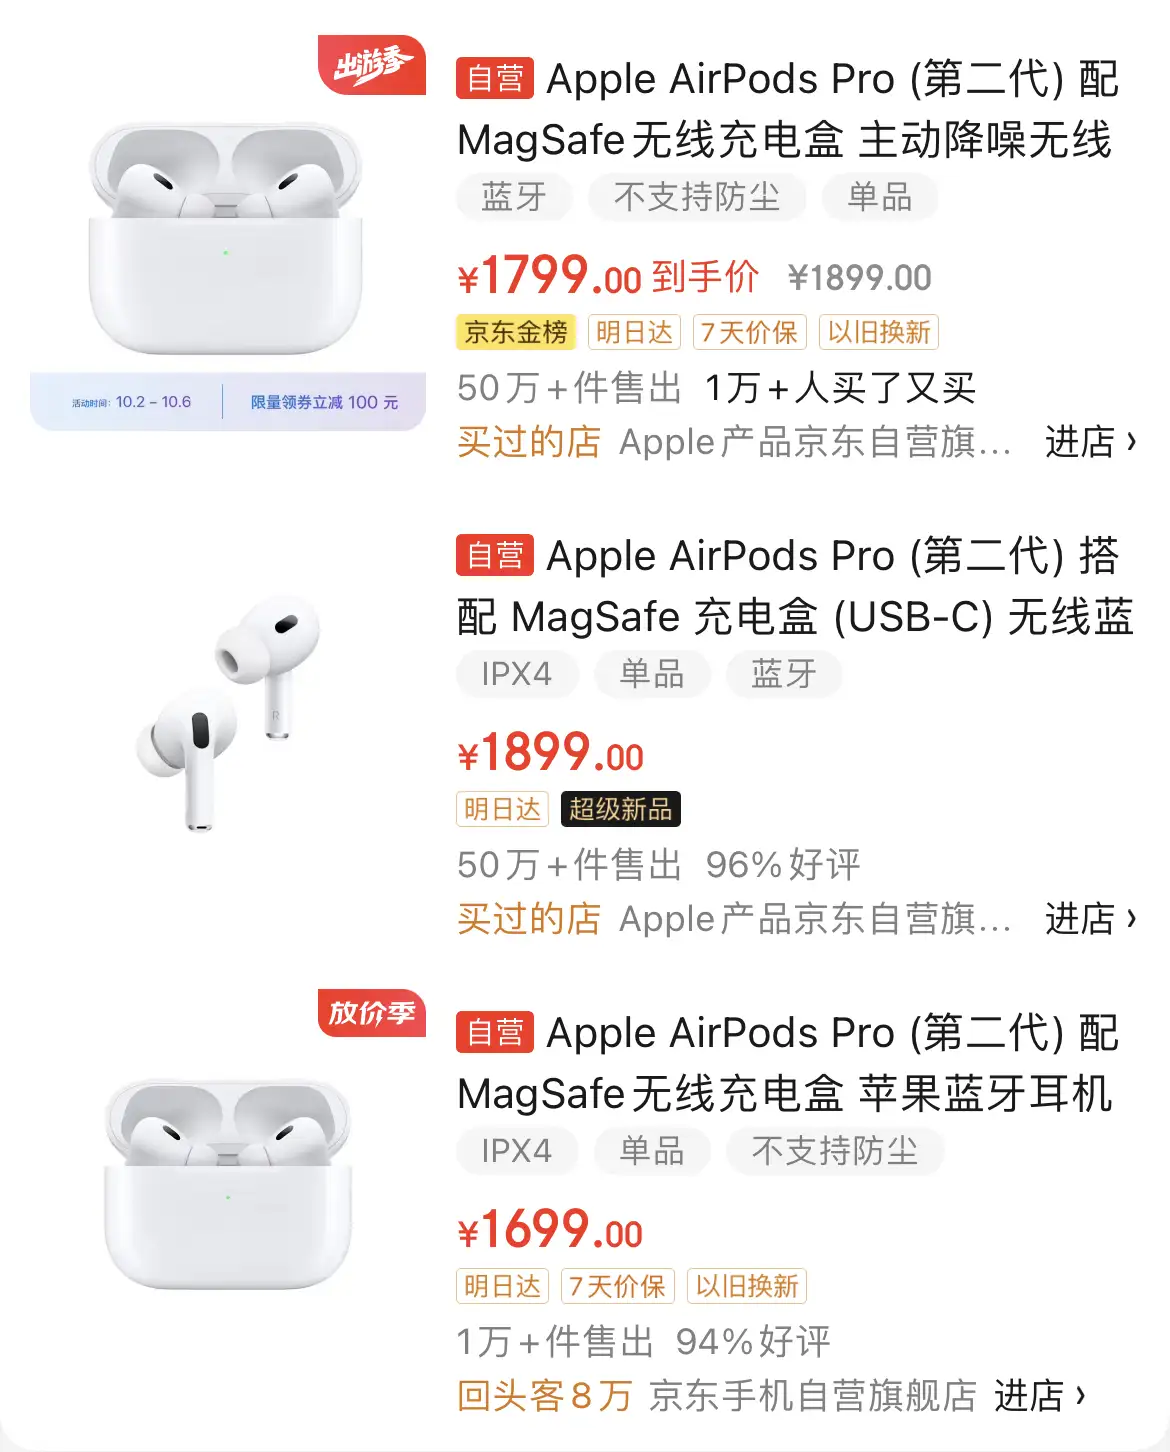 关于我在【京东自营】购买Airpods Pro 2买到【二手货】的经历- 知乎